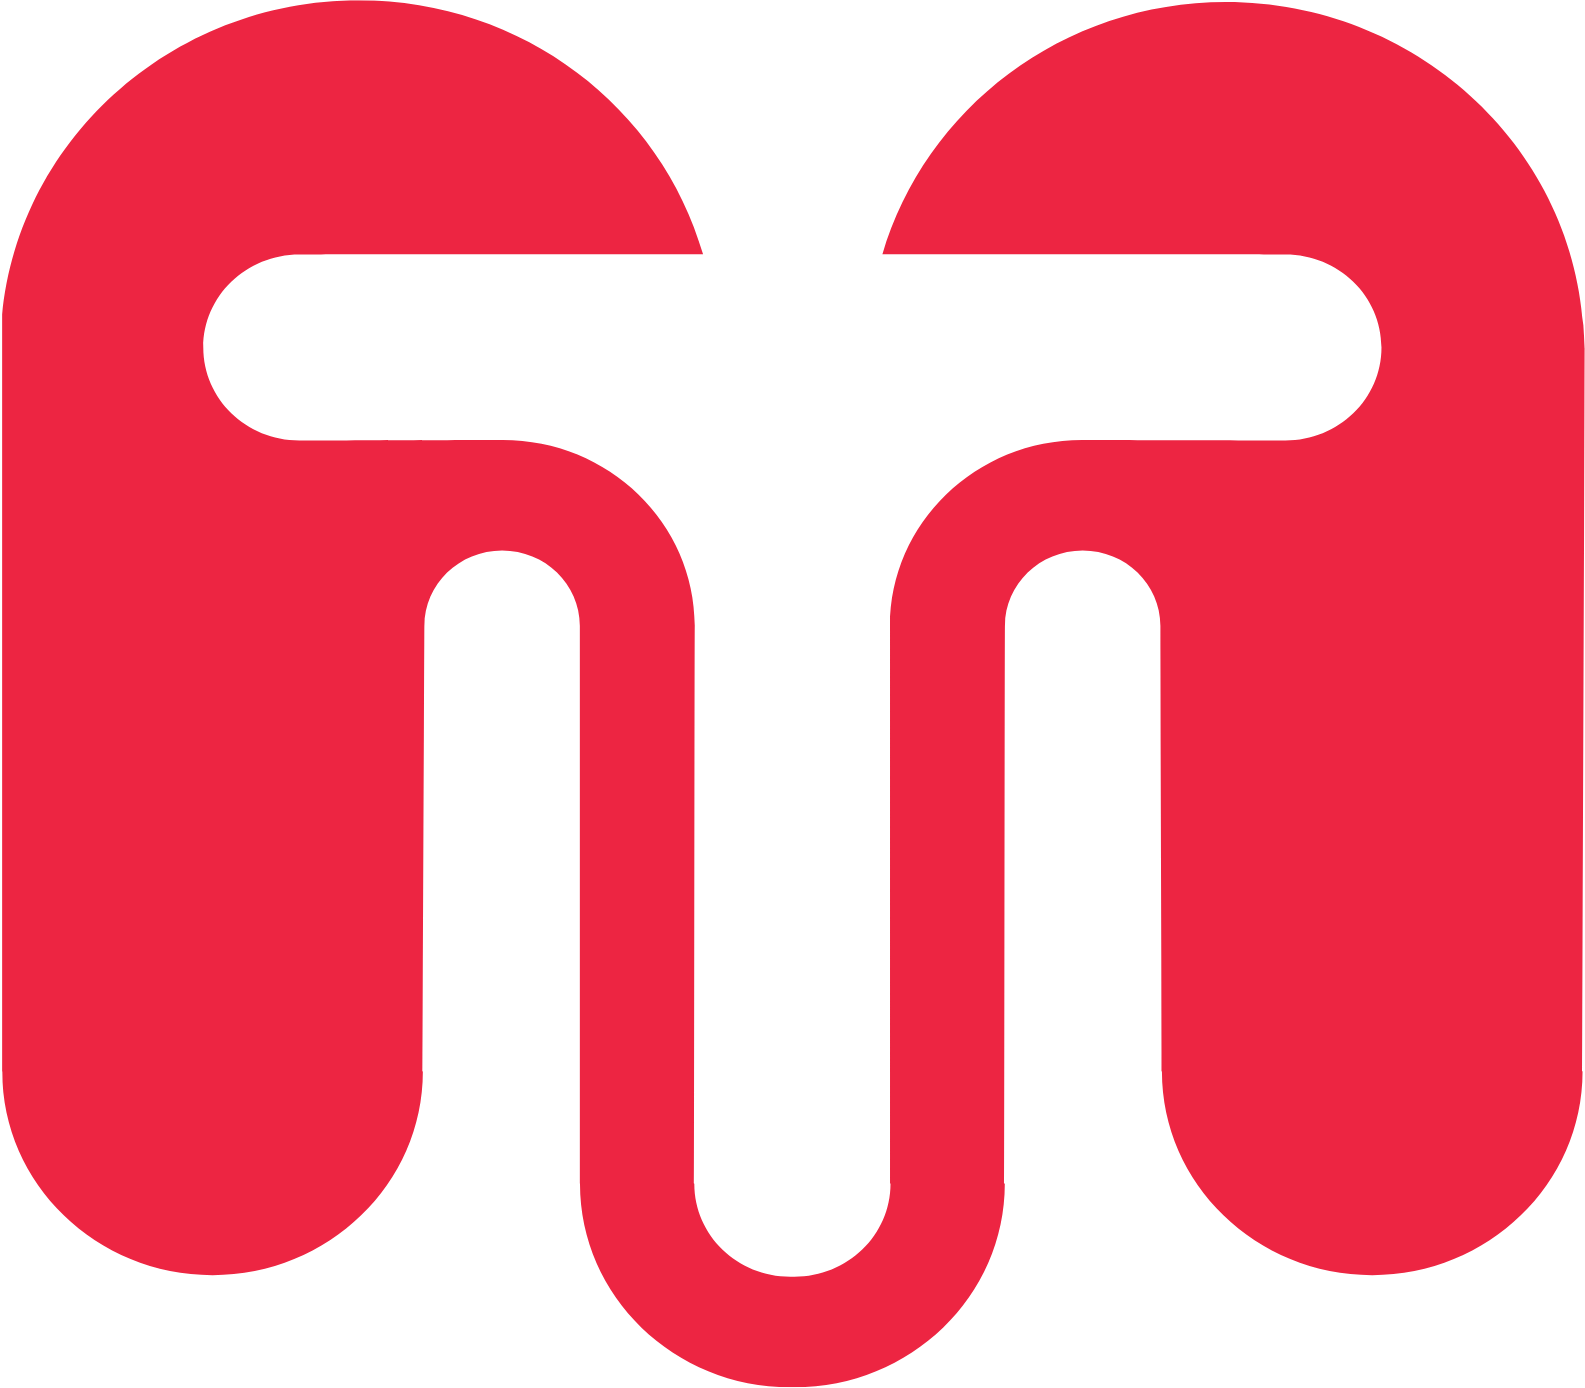 TransMedics Group logo (transparent PNG)